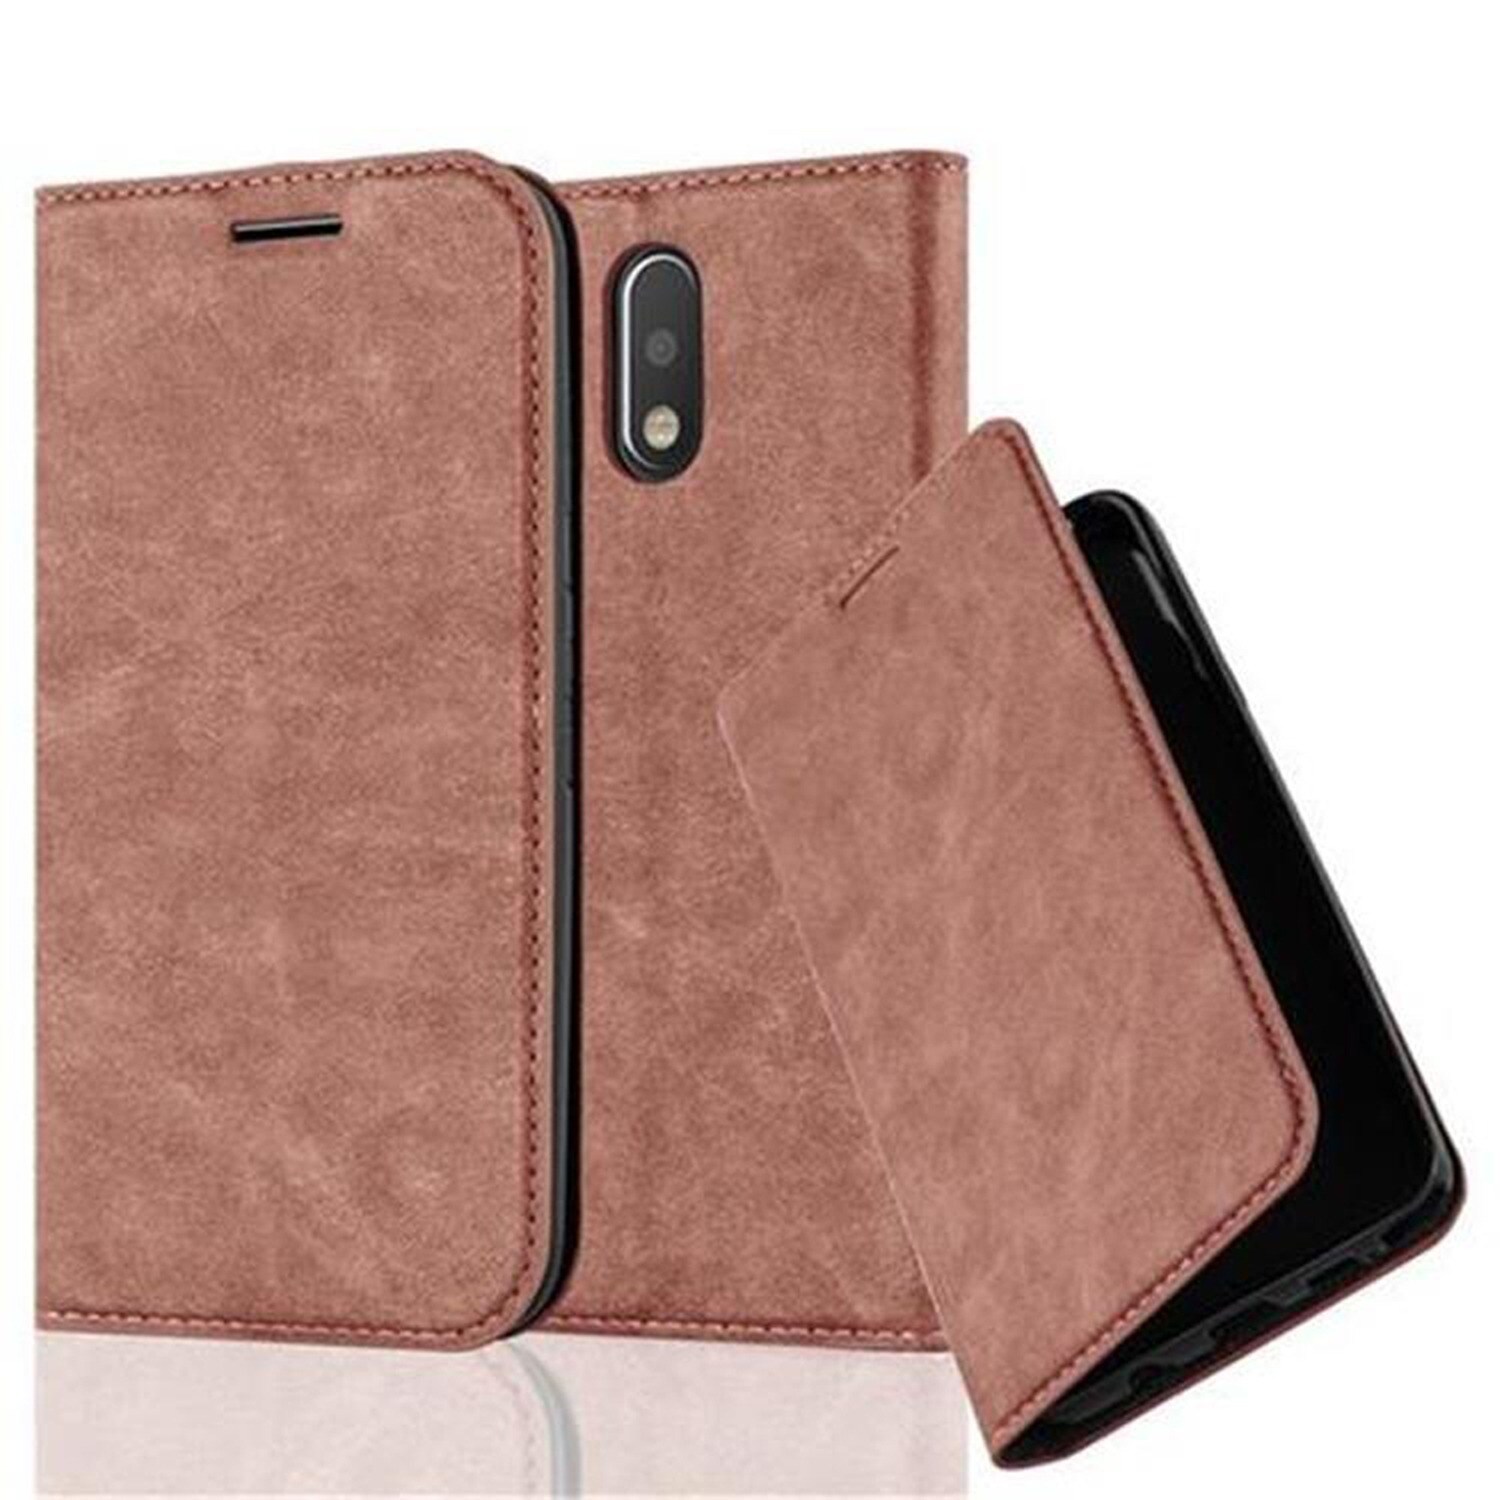 Motorola MOTO G4 / G4 PLUS lommebokdeksel case (brun) - Elkjøp